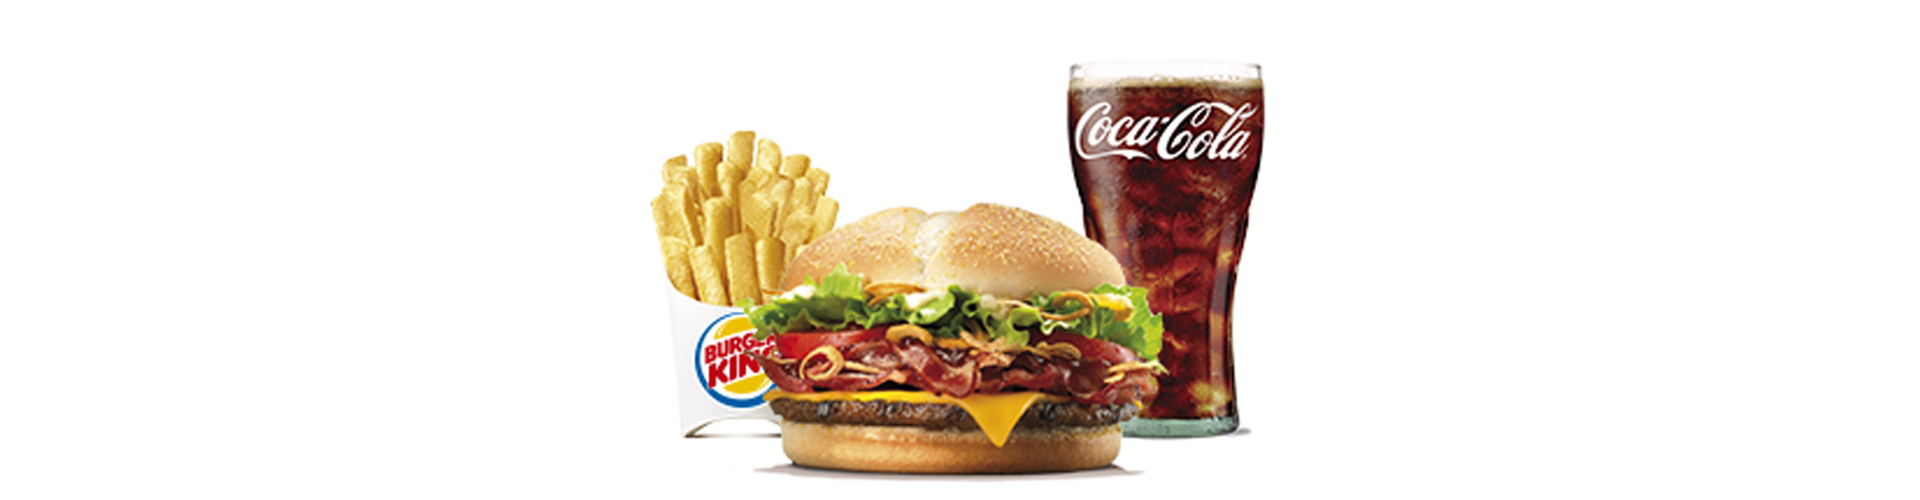 burgerking-40001713-limonada-patatas